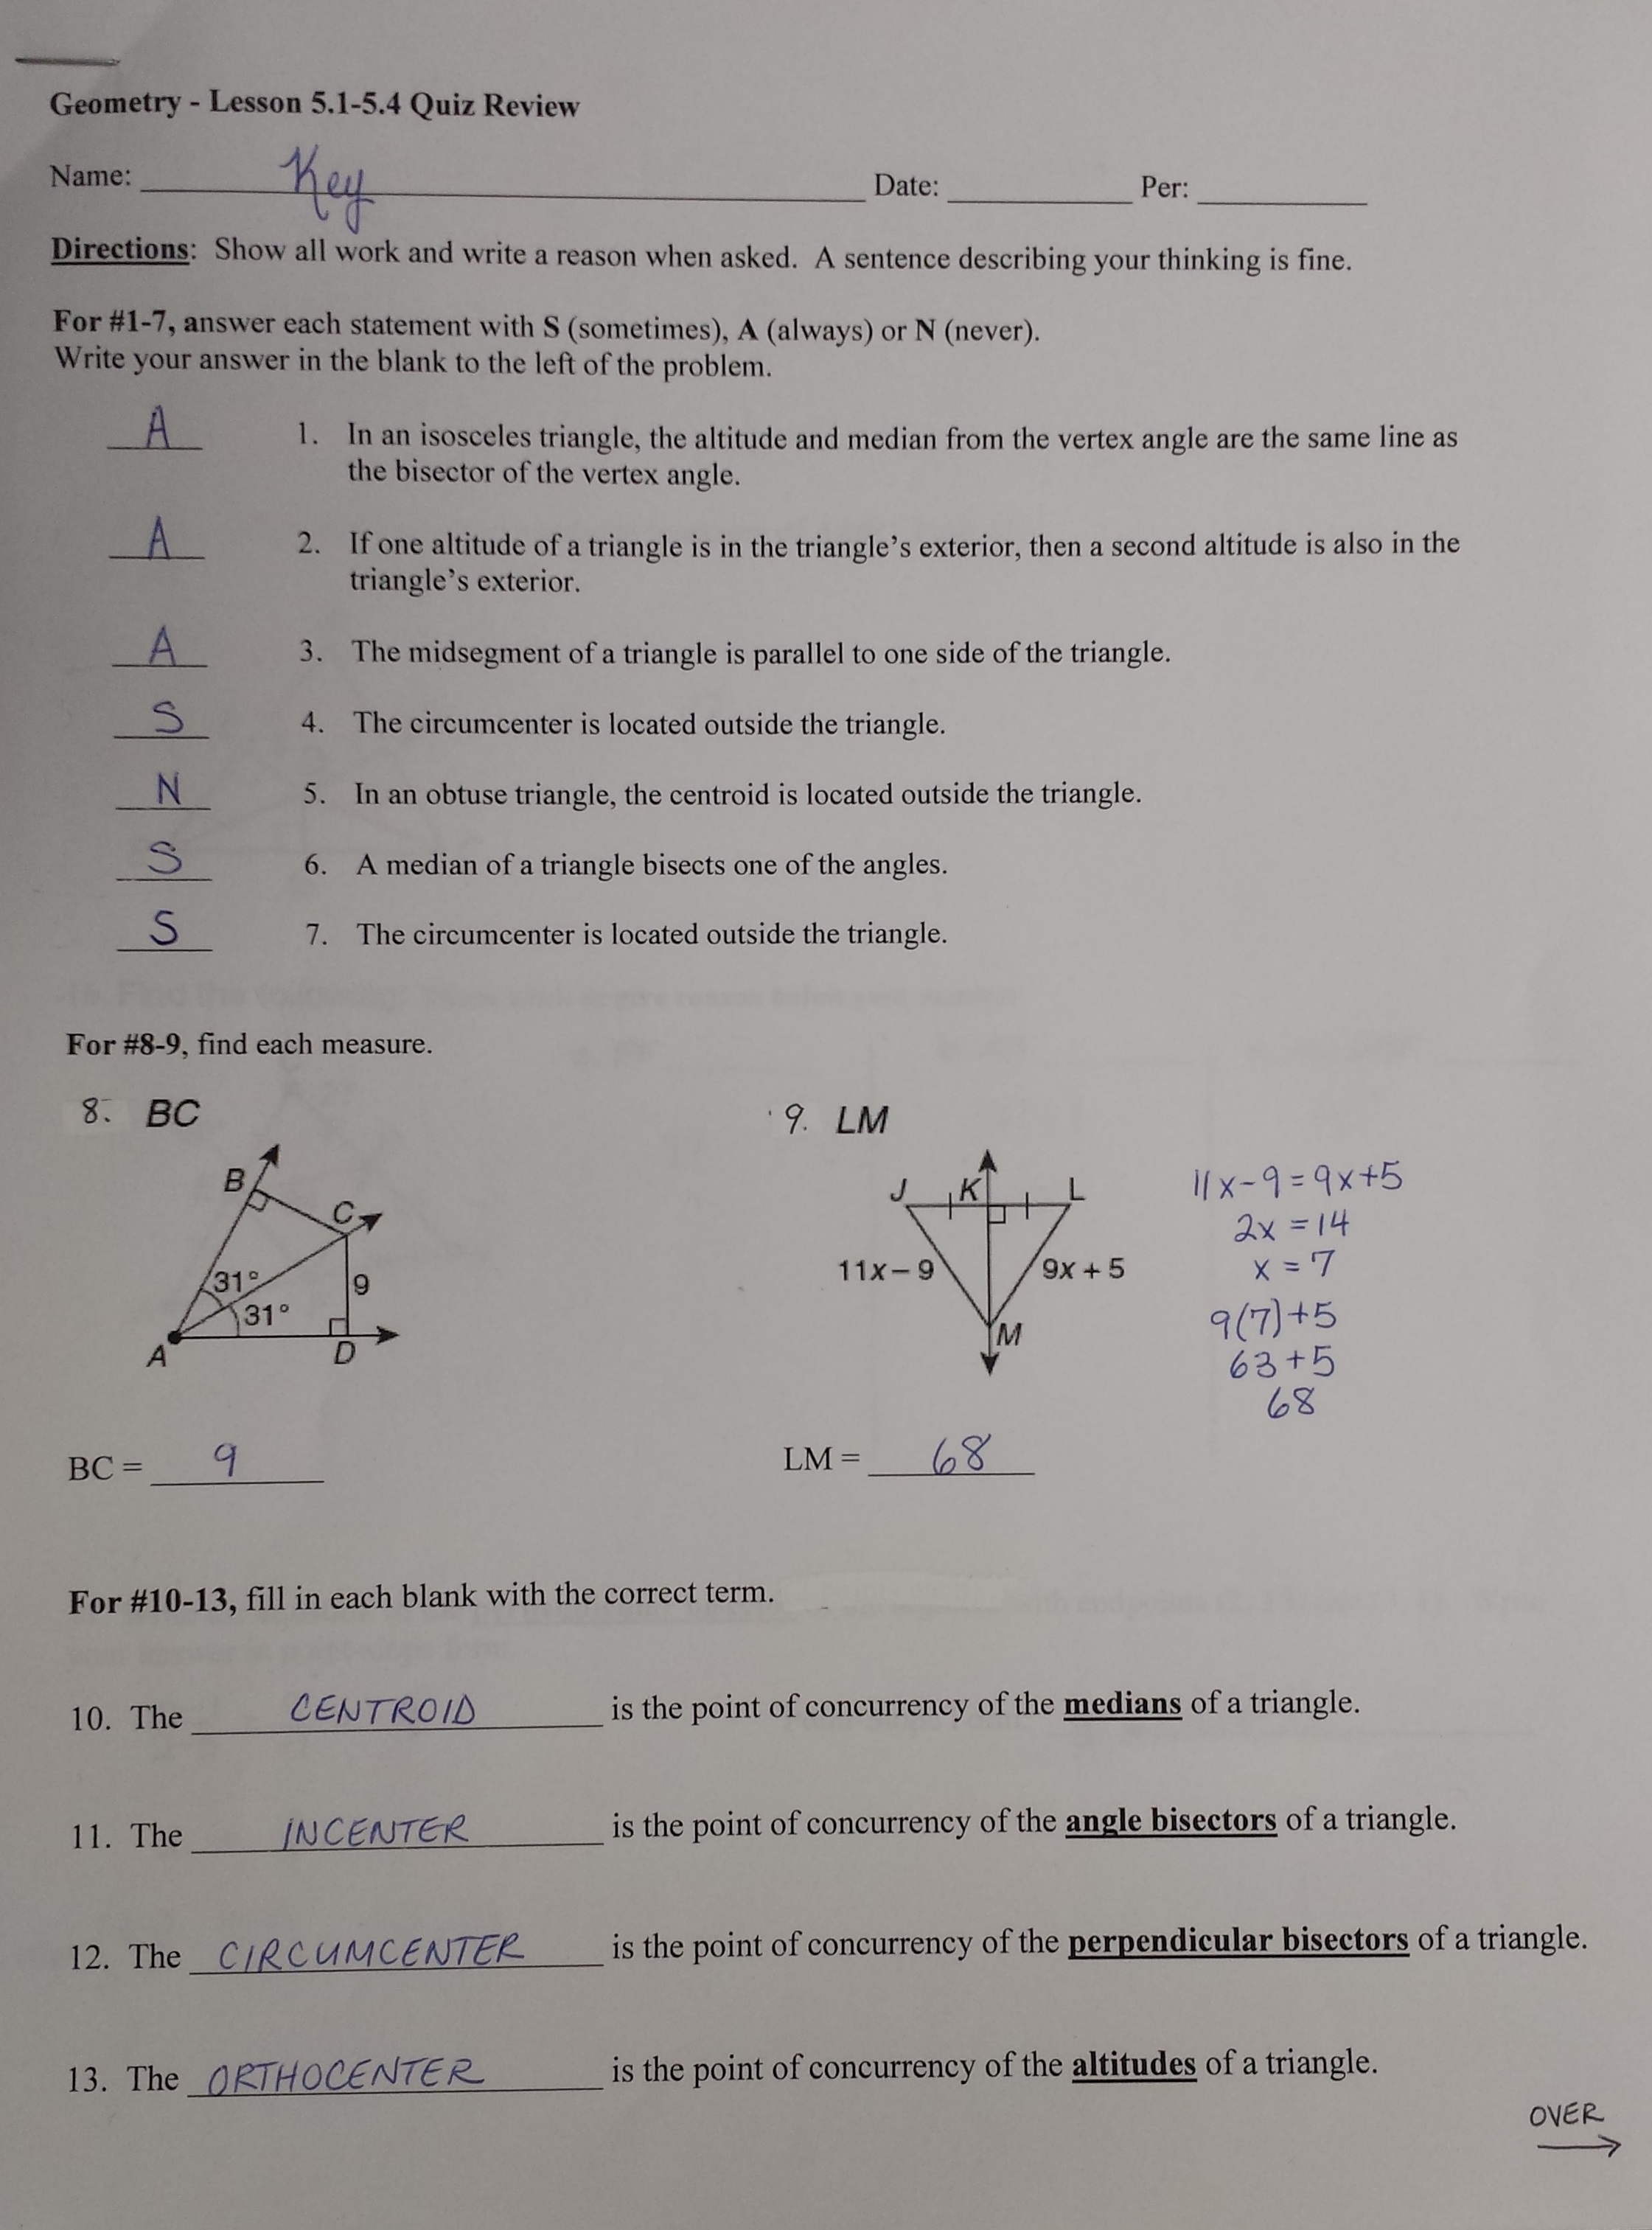 Goemetry homework help